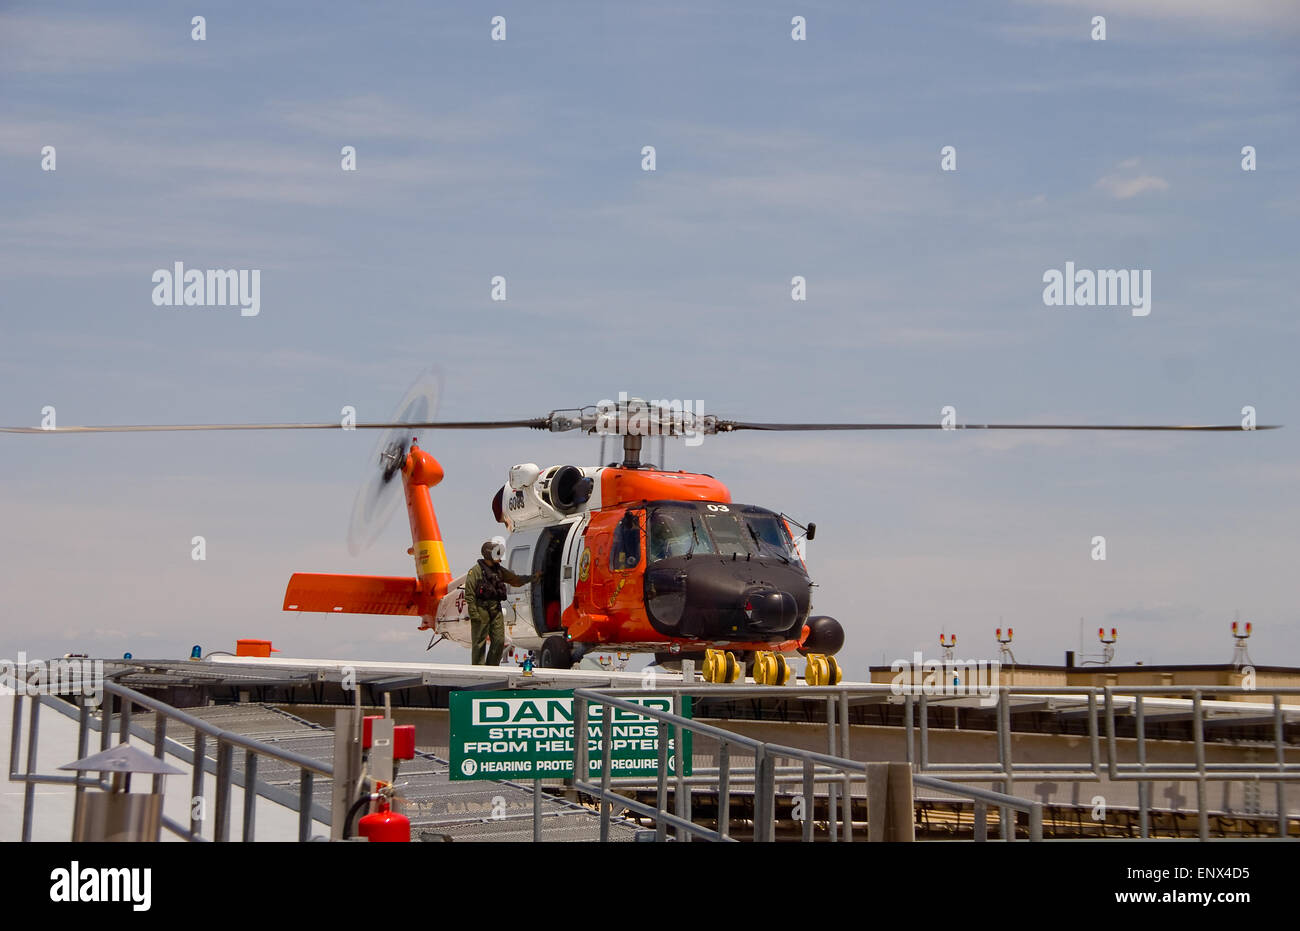 Hélicoptère de sauvetage de la Garde côtière canadienne Jayhawk Banque D'Images